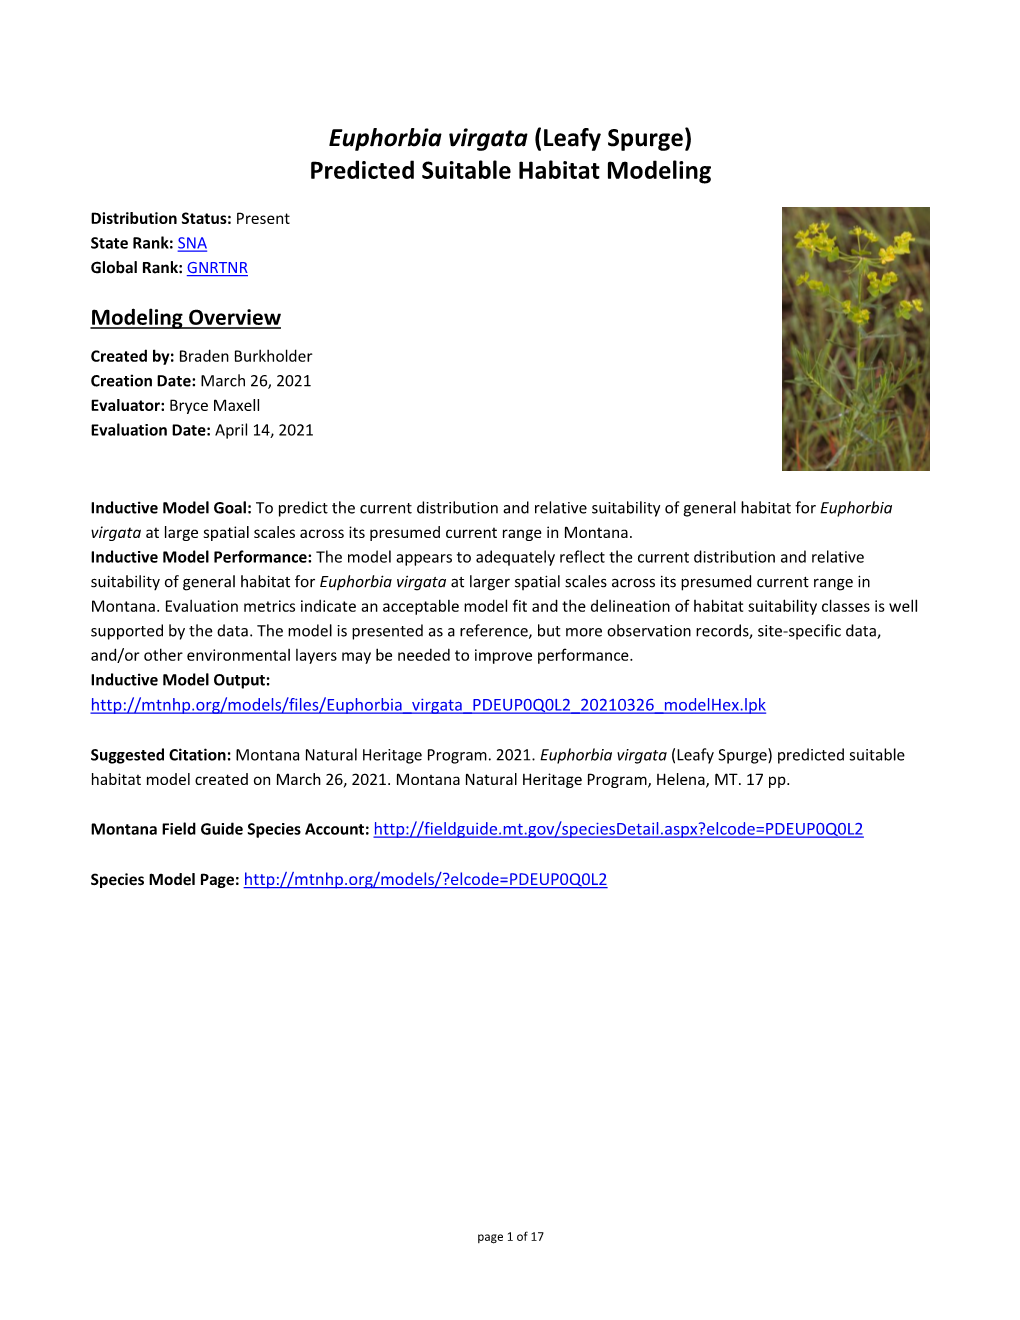 Euphorbia Virgata (Leafy Spurge) Predicted Suitable Habitat Modeling